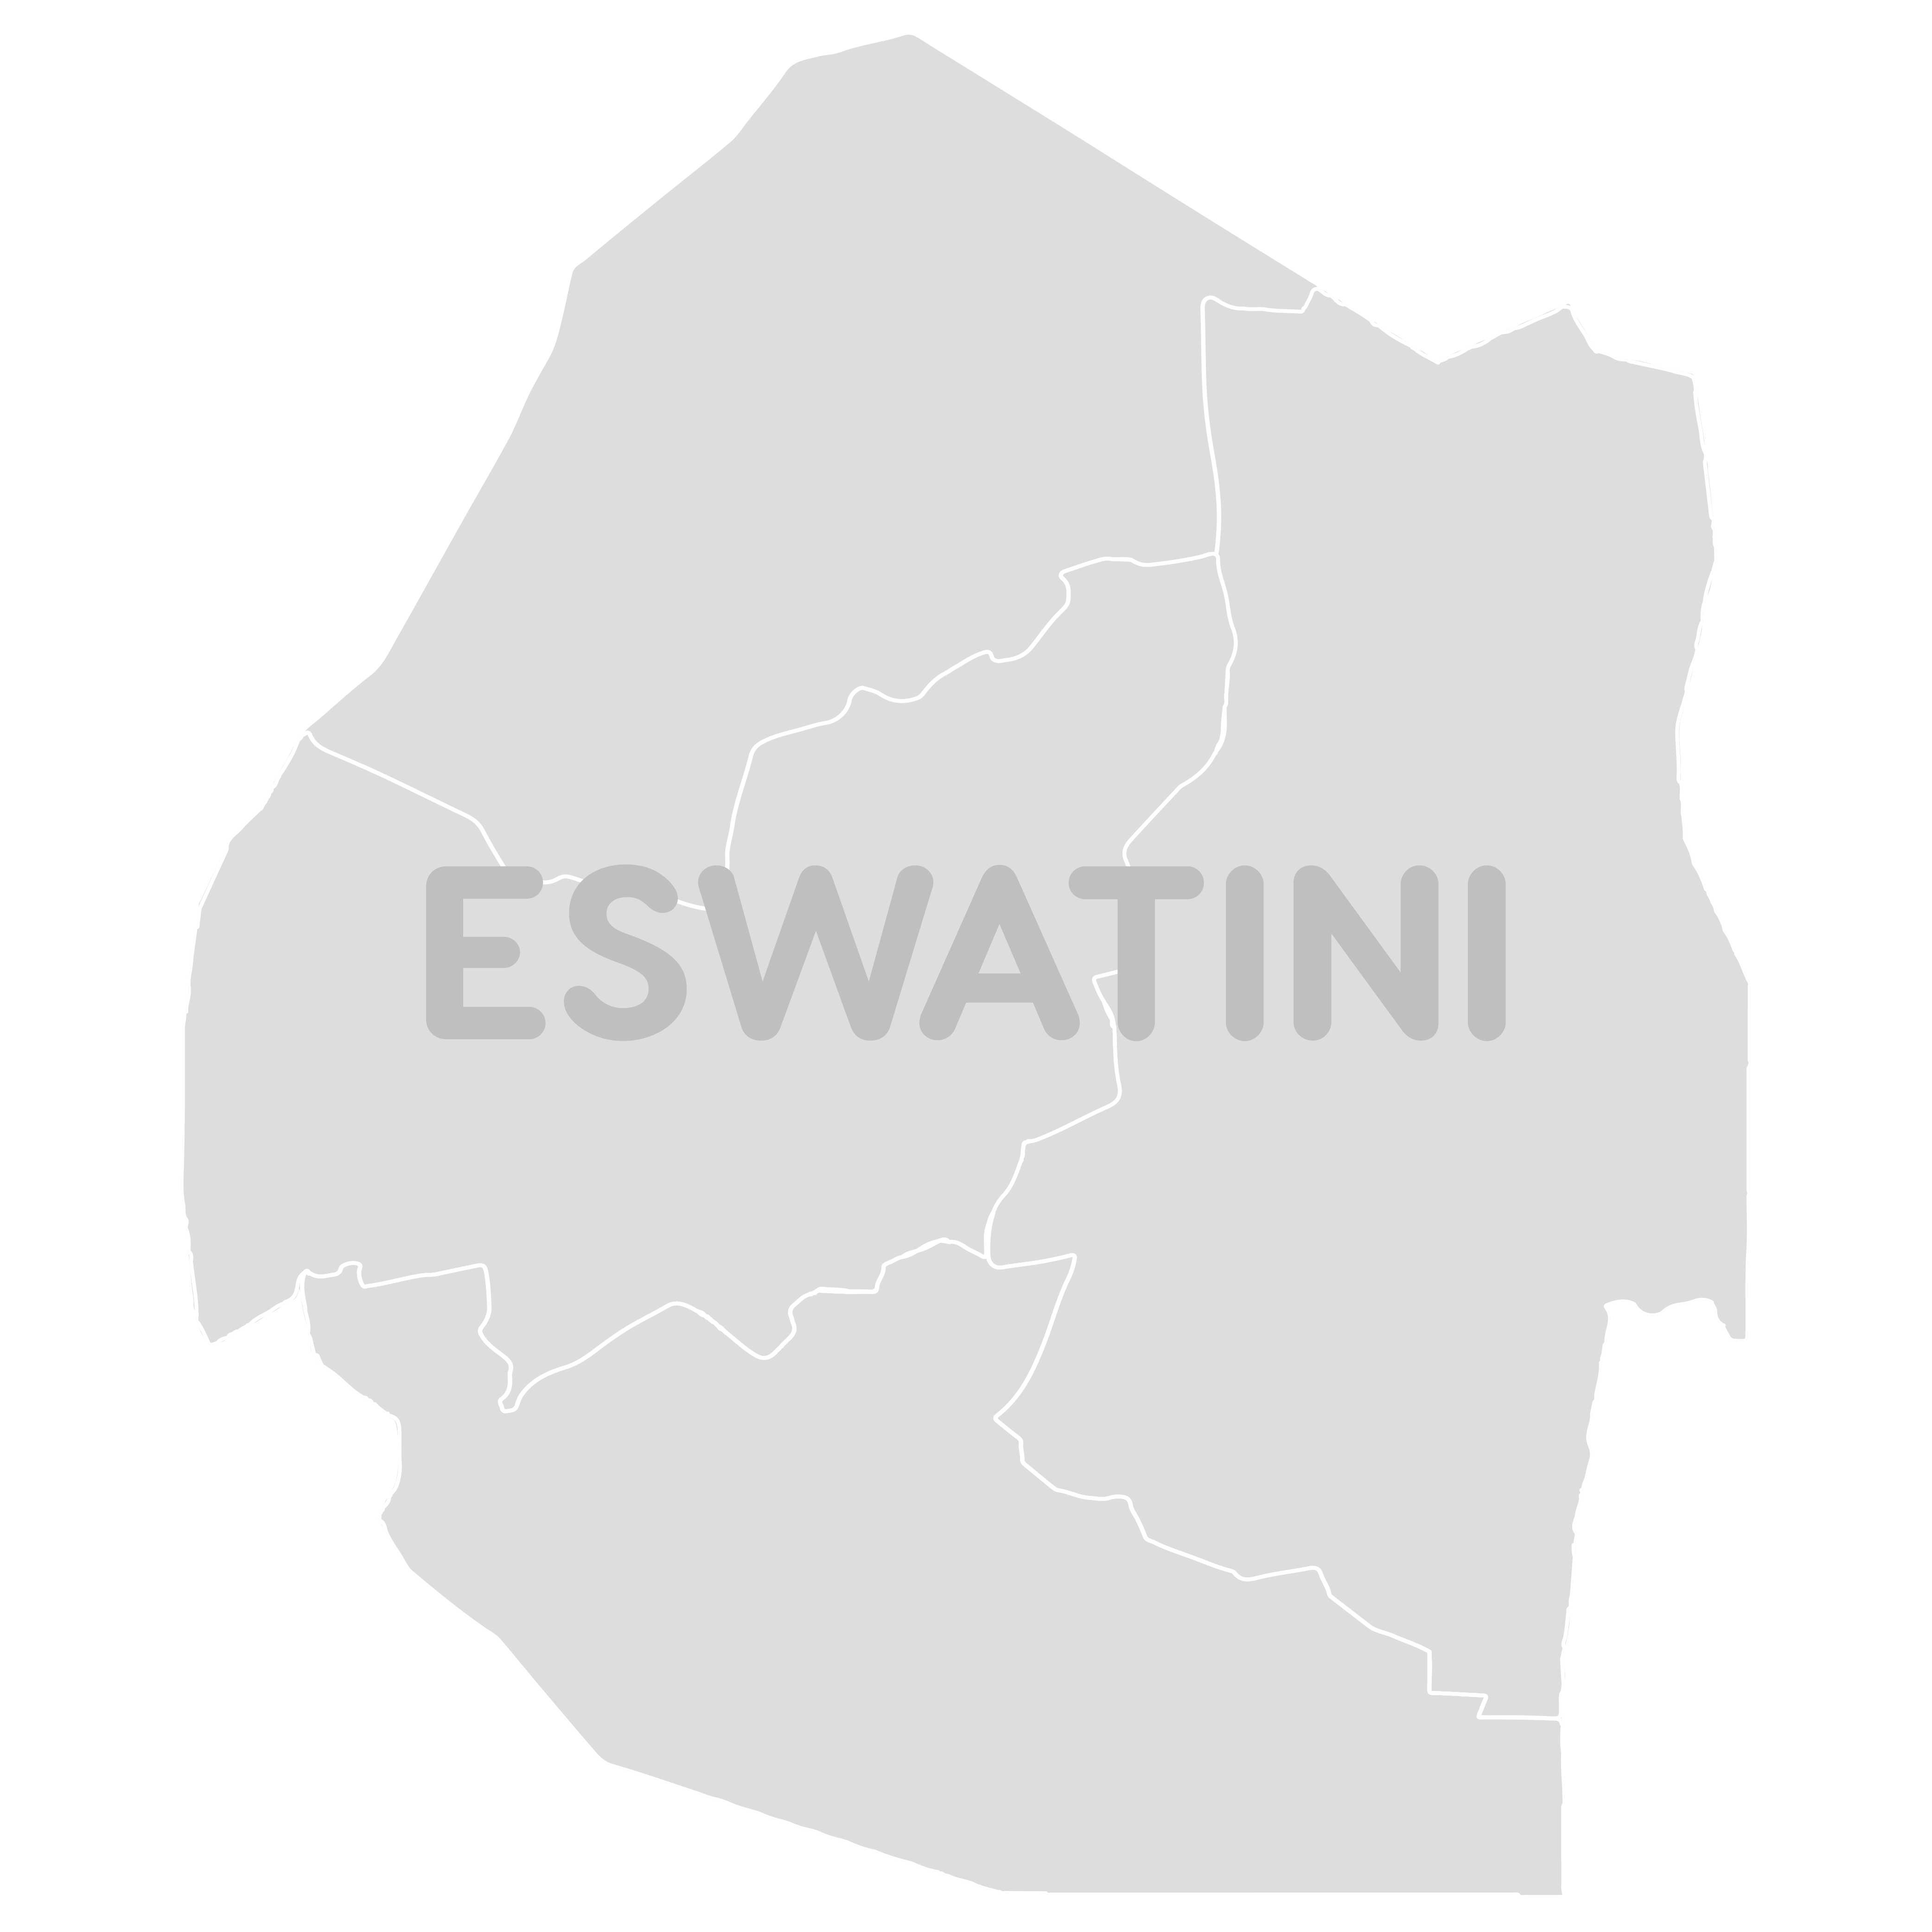 Eswatini Map TourSA